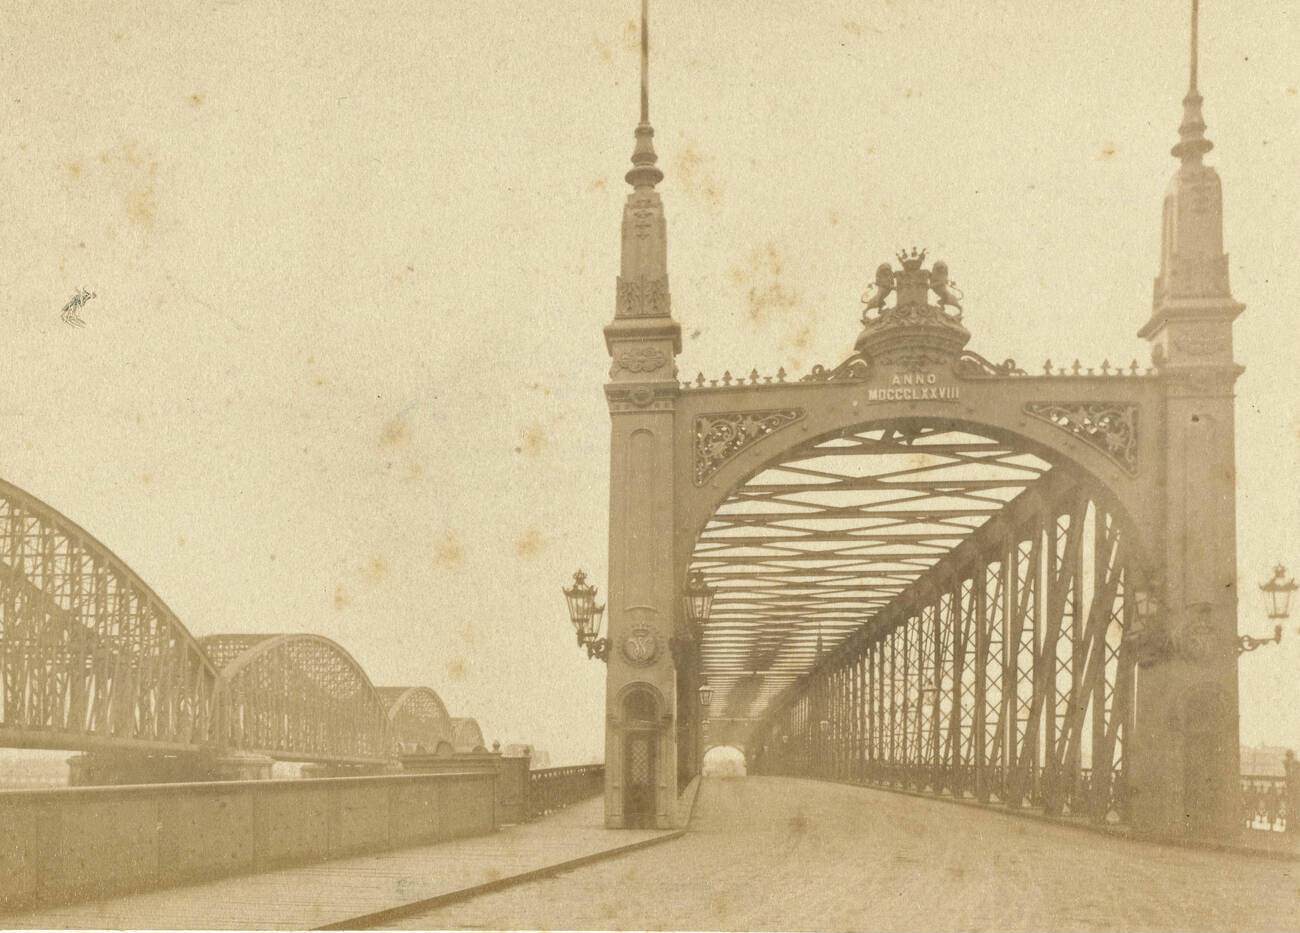 View Willemsbrug in Rotterdam, The Netherlands, 1900